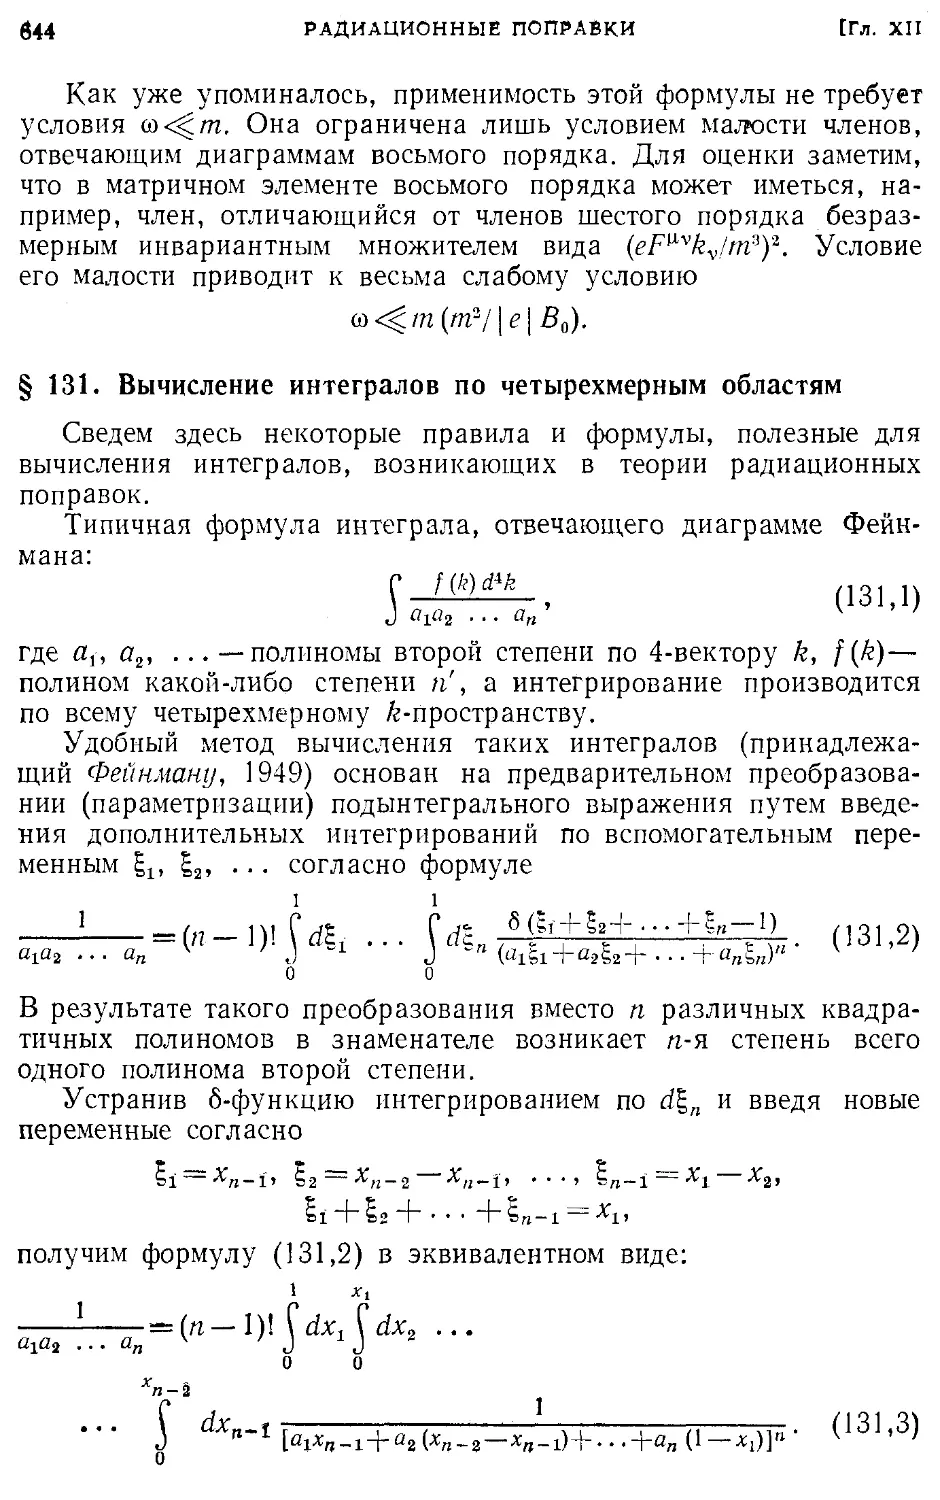 § 131. Вычисление интегралов по четырехмерным областям